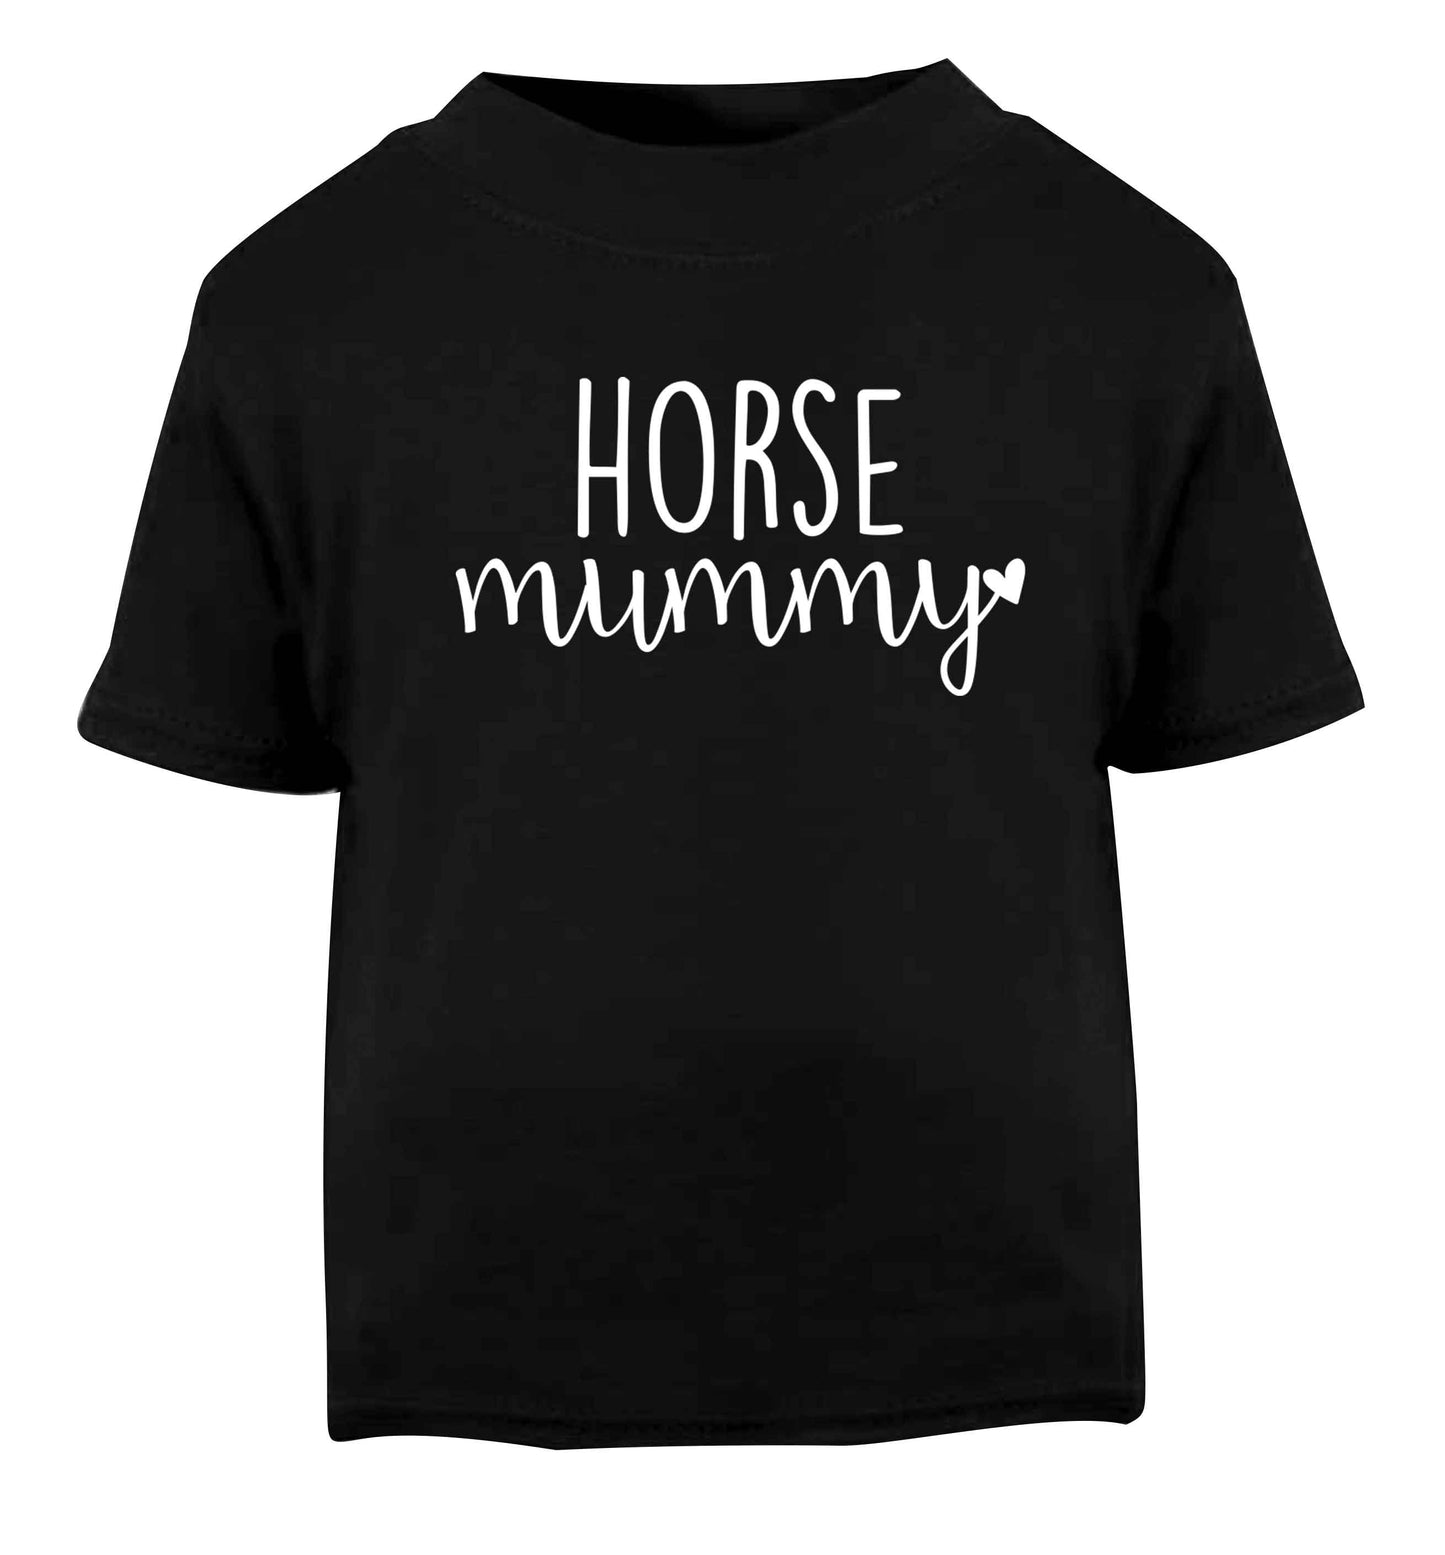 Horse mummy Black baby toddler Tshirt 2 years